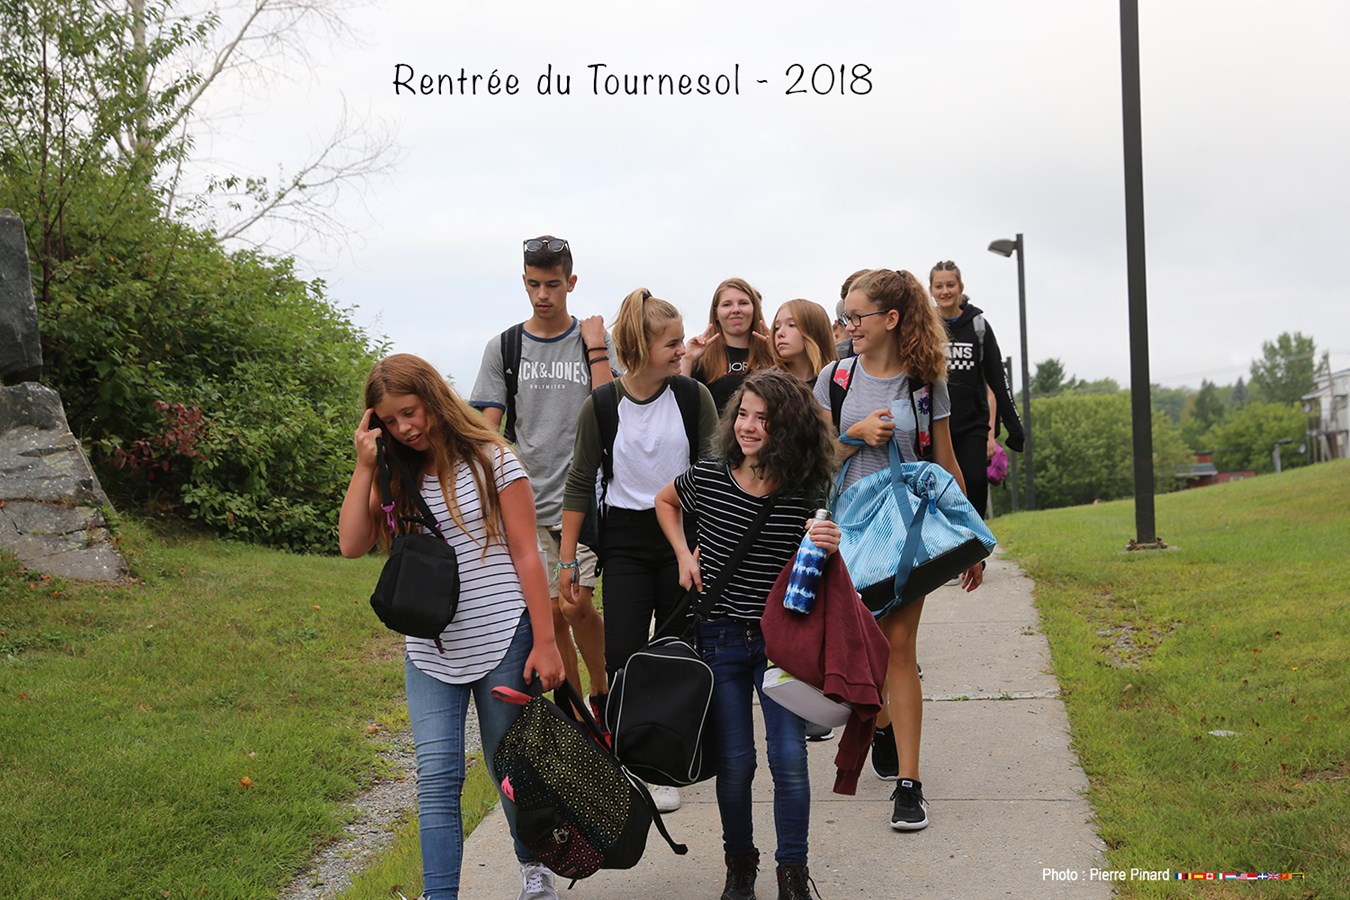 Rentrée scolaire 2018 au Tournesol